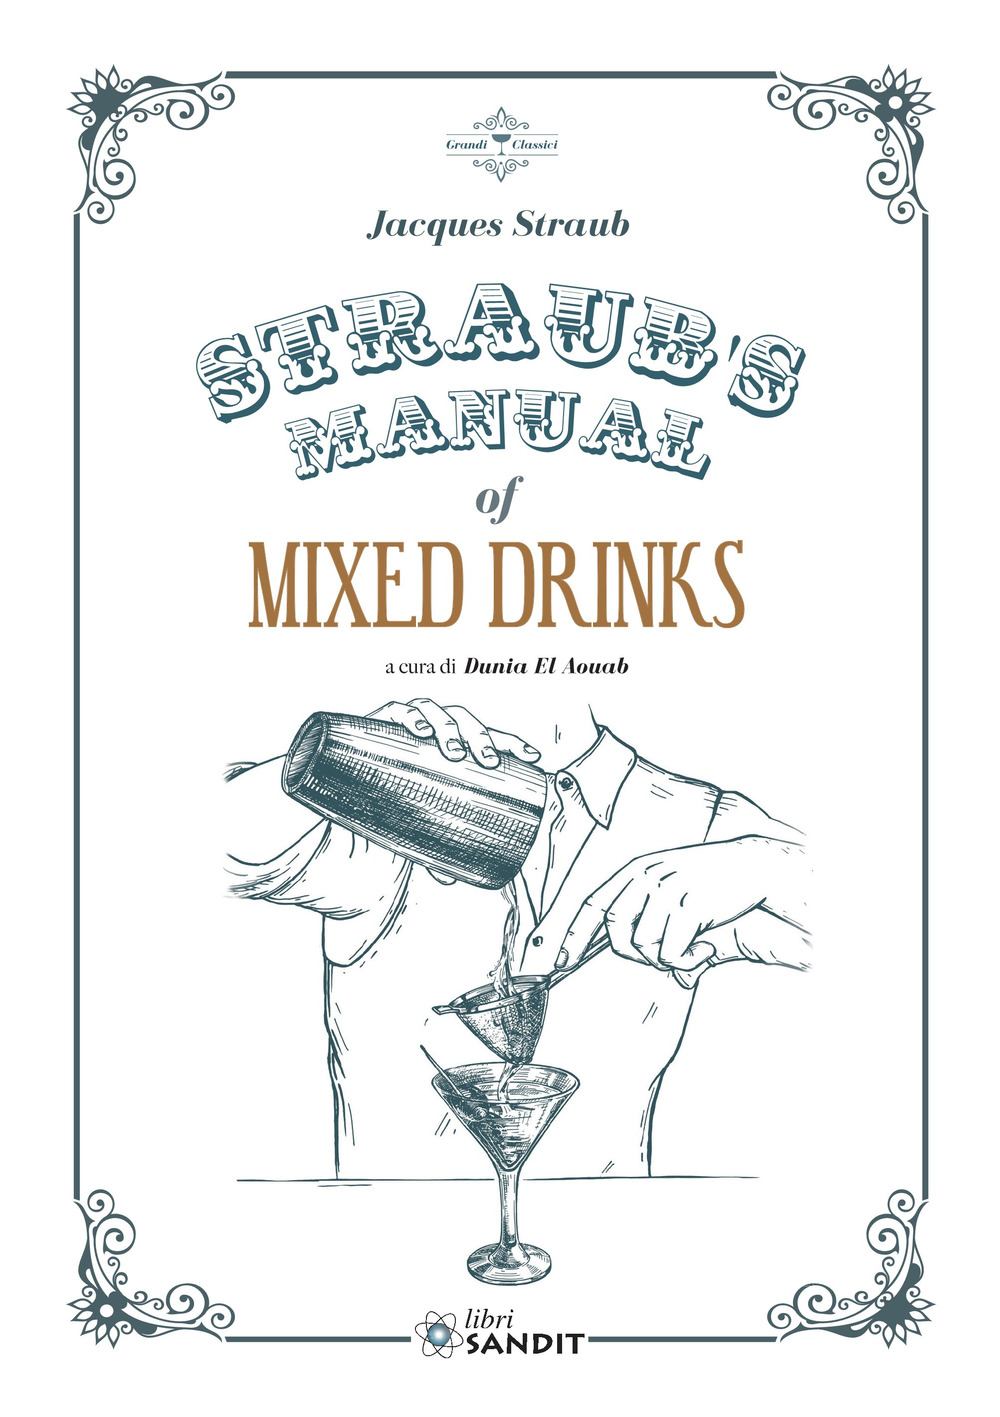 Straub's Manual of Mixed Drinks. Un manuale completo di bevande miscelate per tutte le occasioni